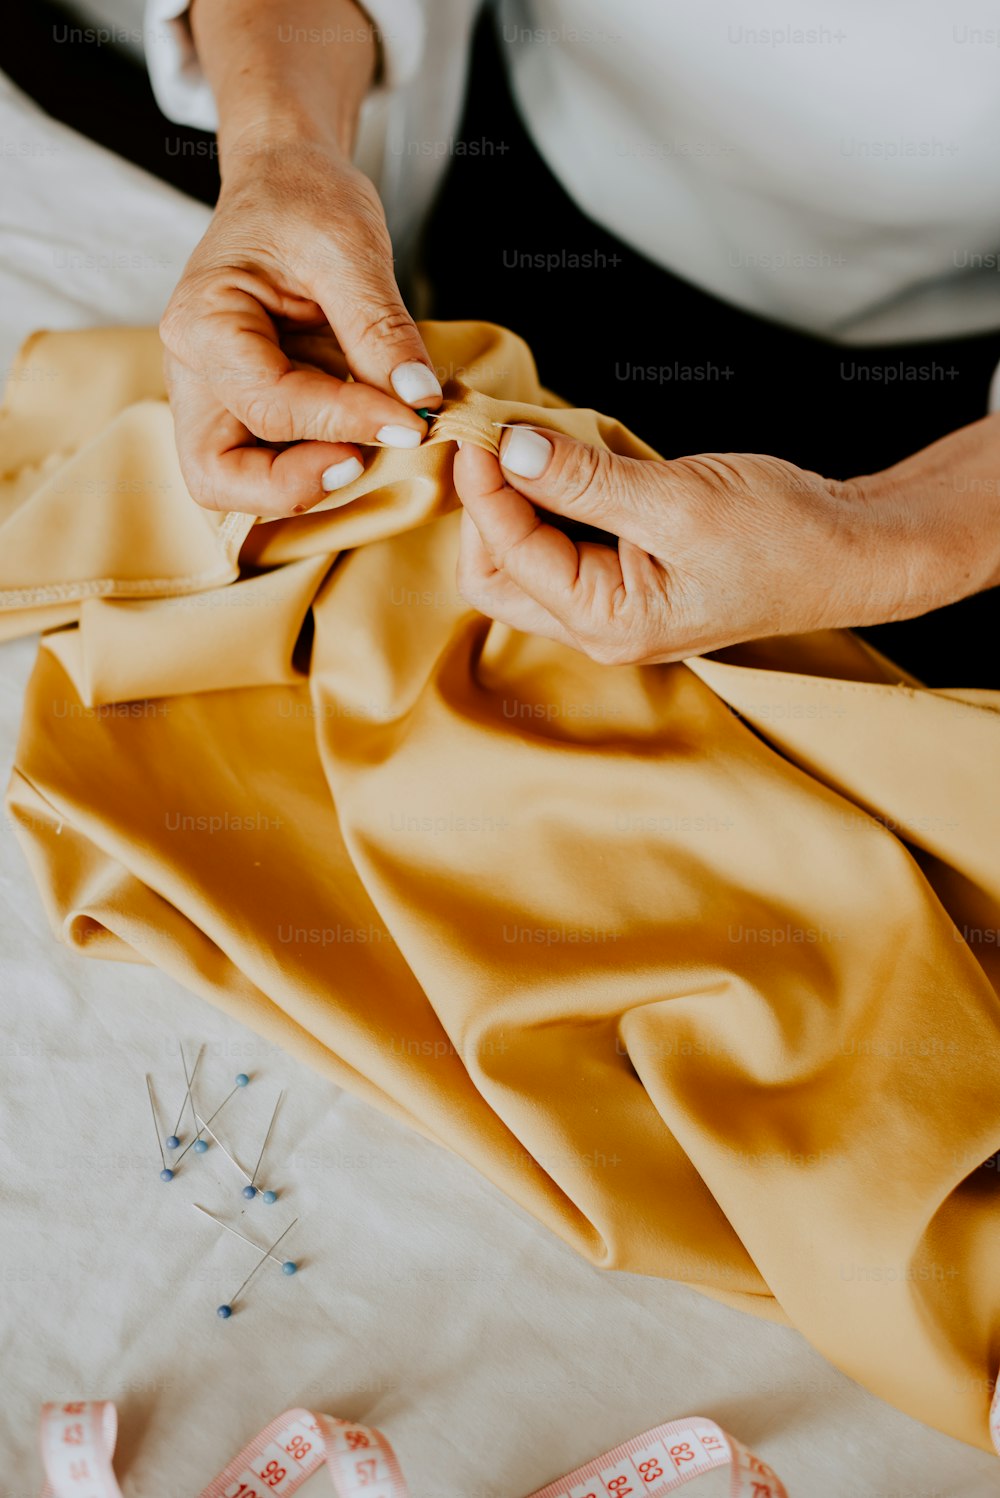 Eine Frau näht ein gelbes Tuch auf einer Nähmaschine